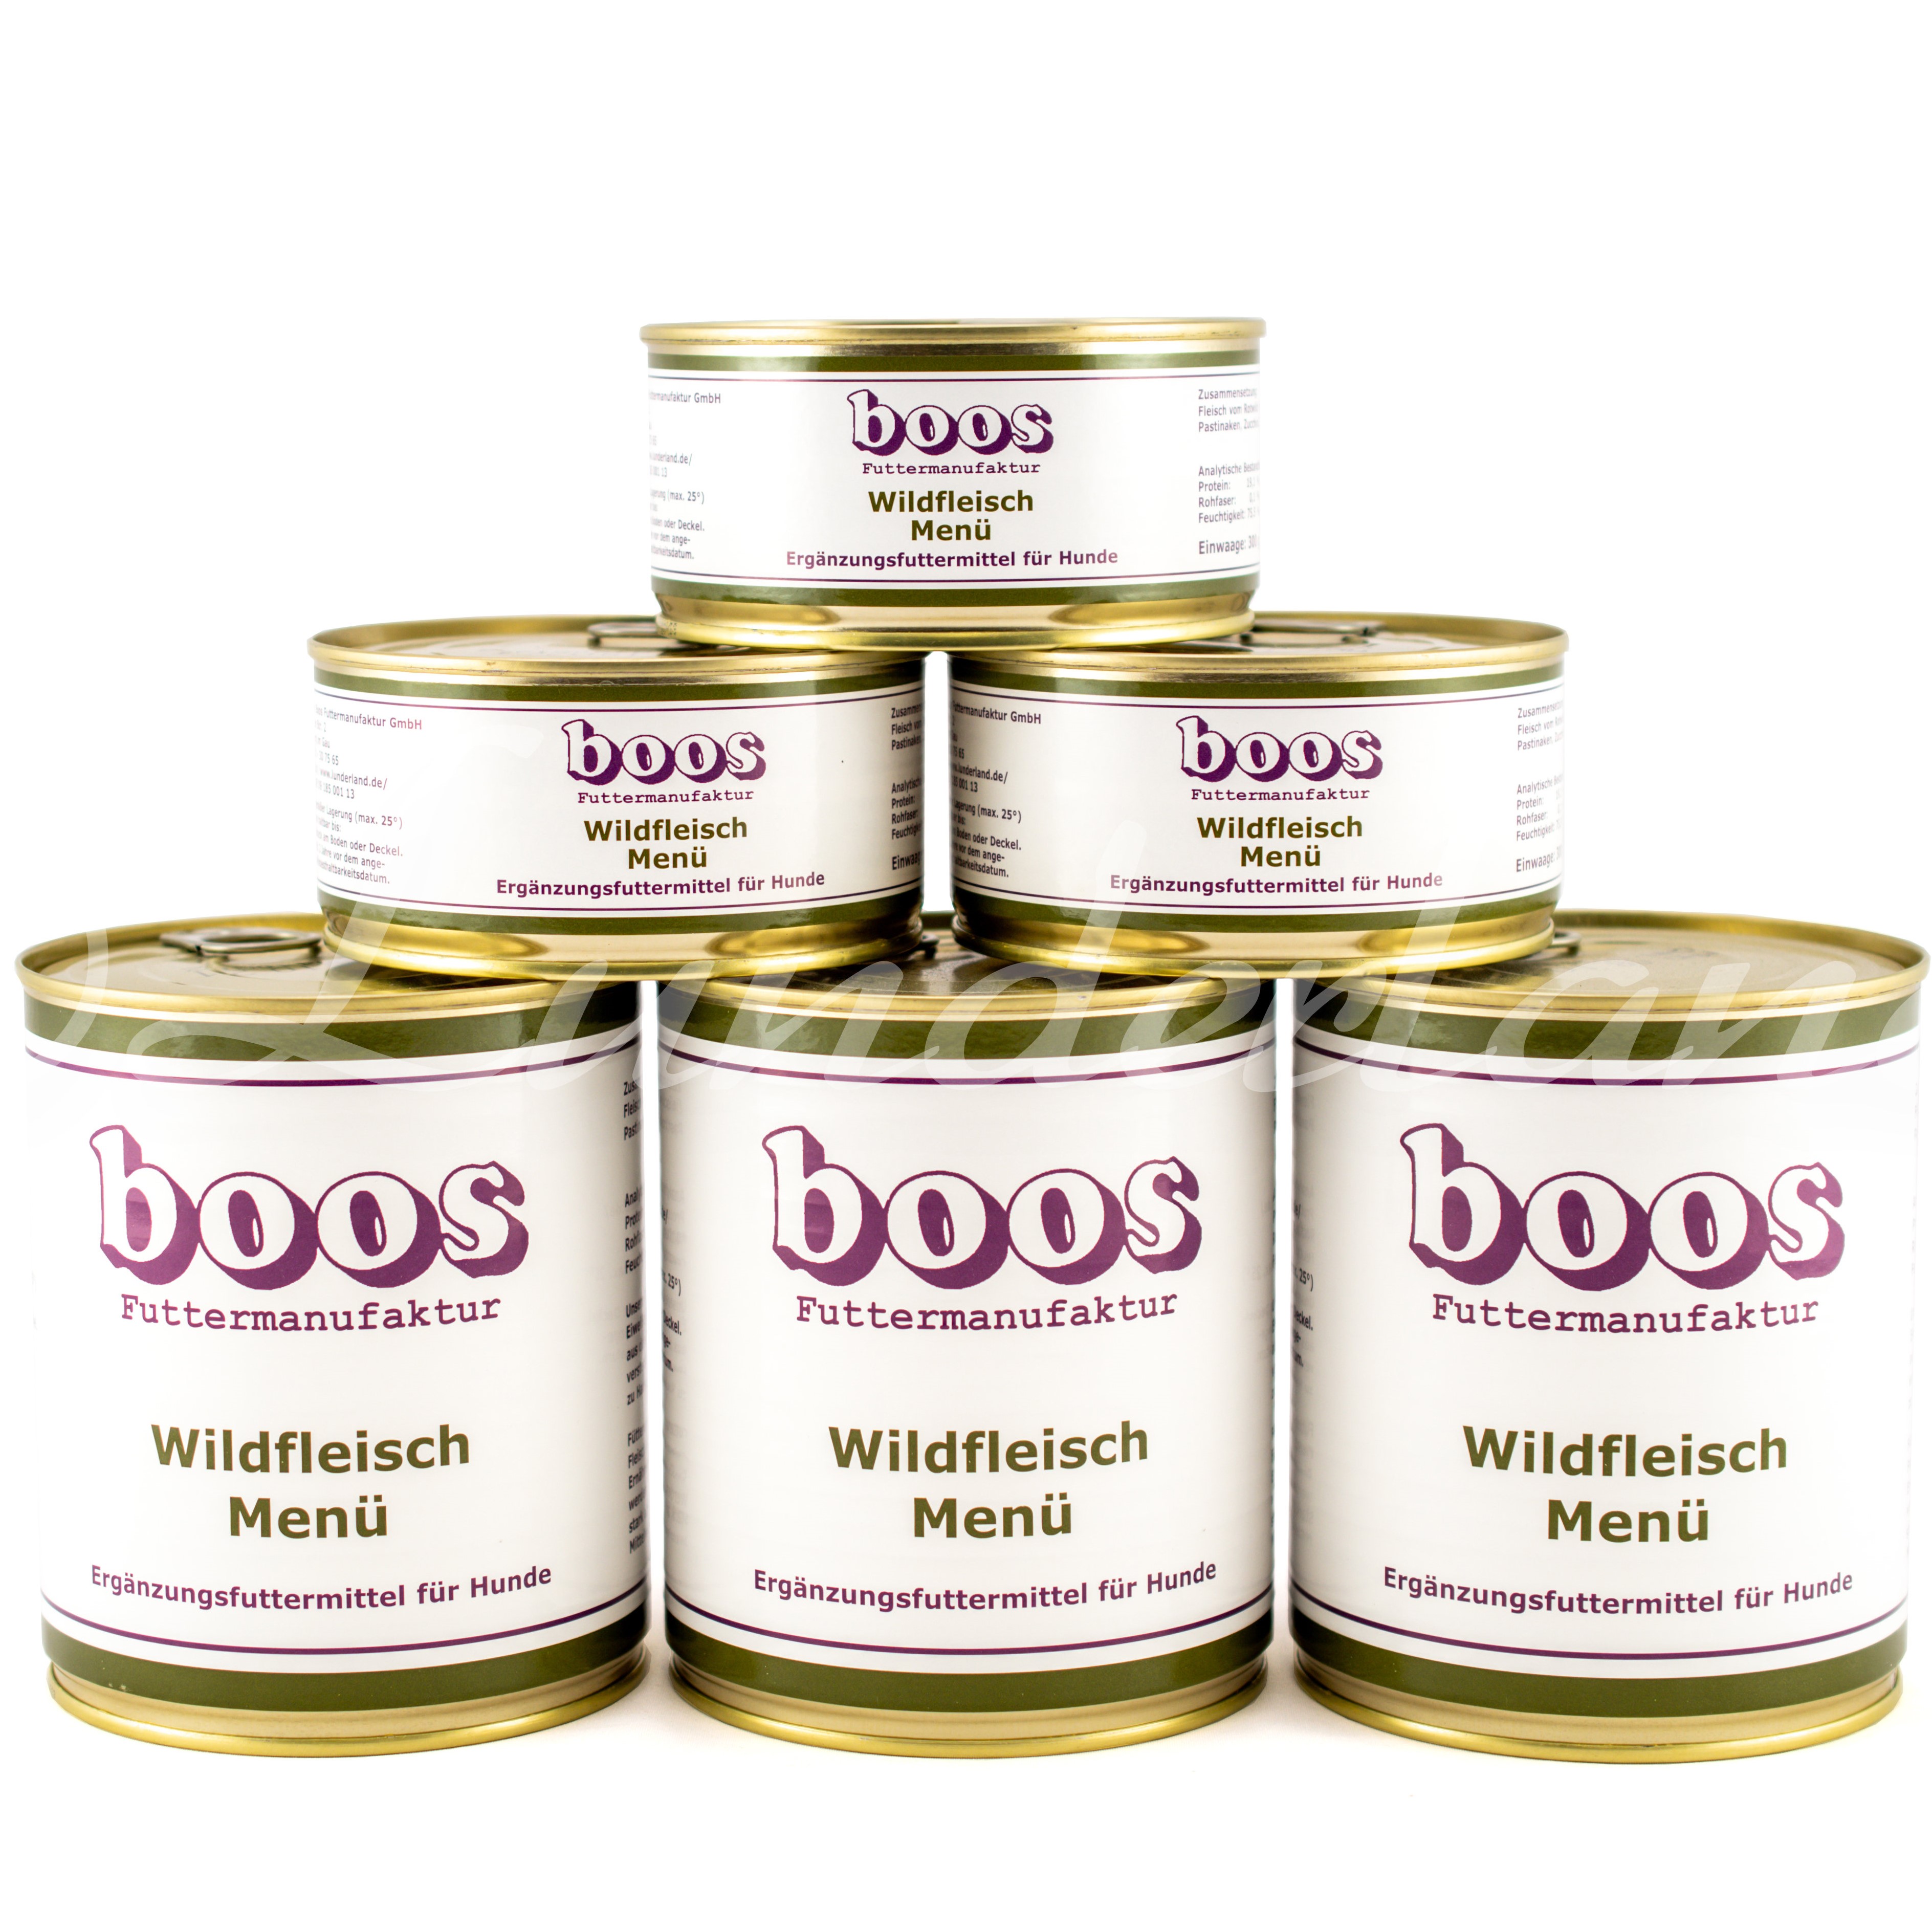 Boos Wild-Menü 300g Dose